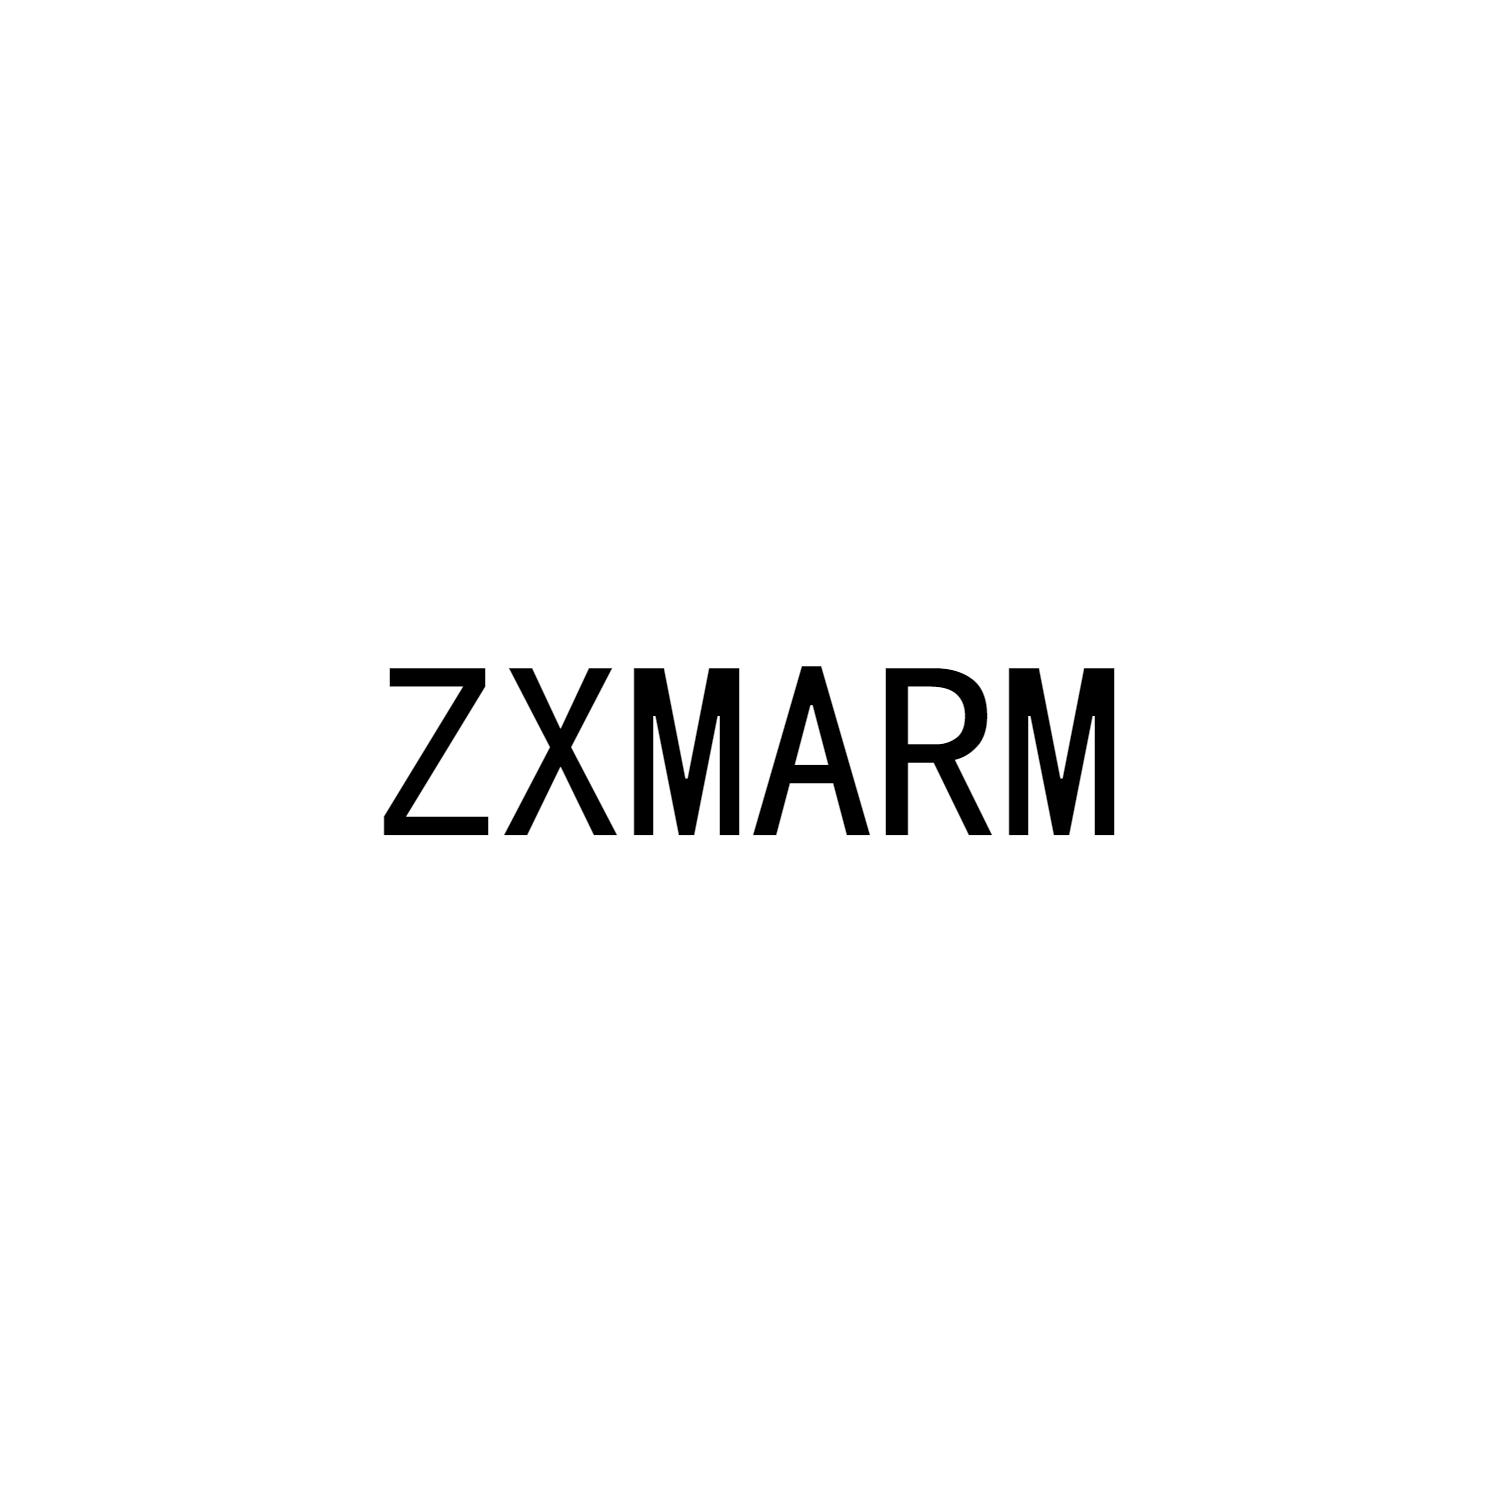 ZXMARM